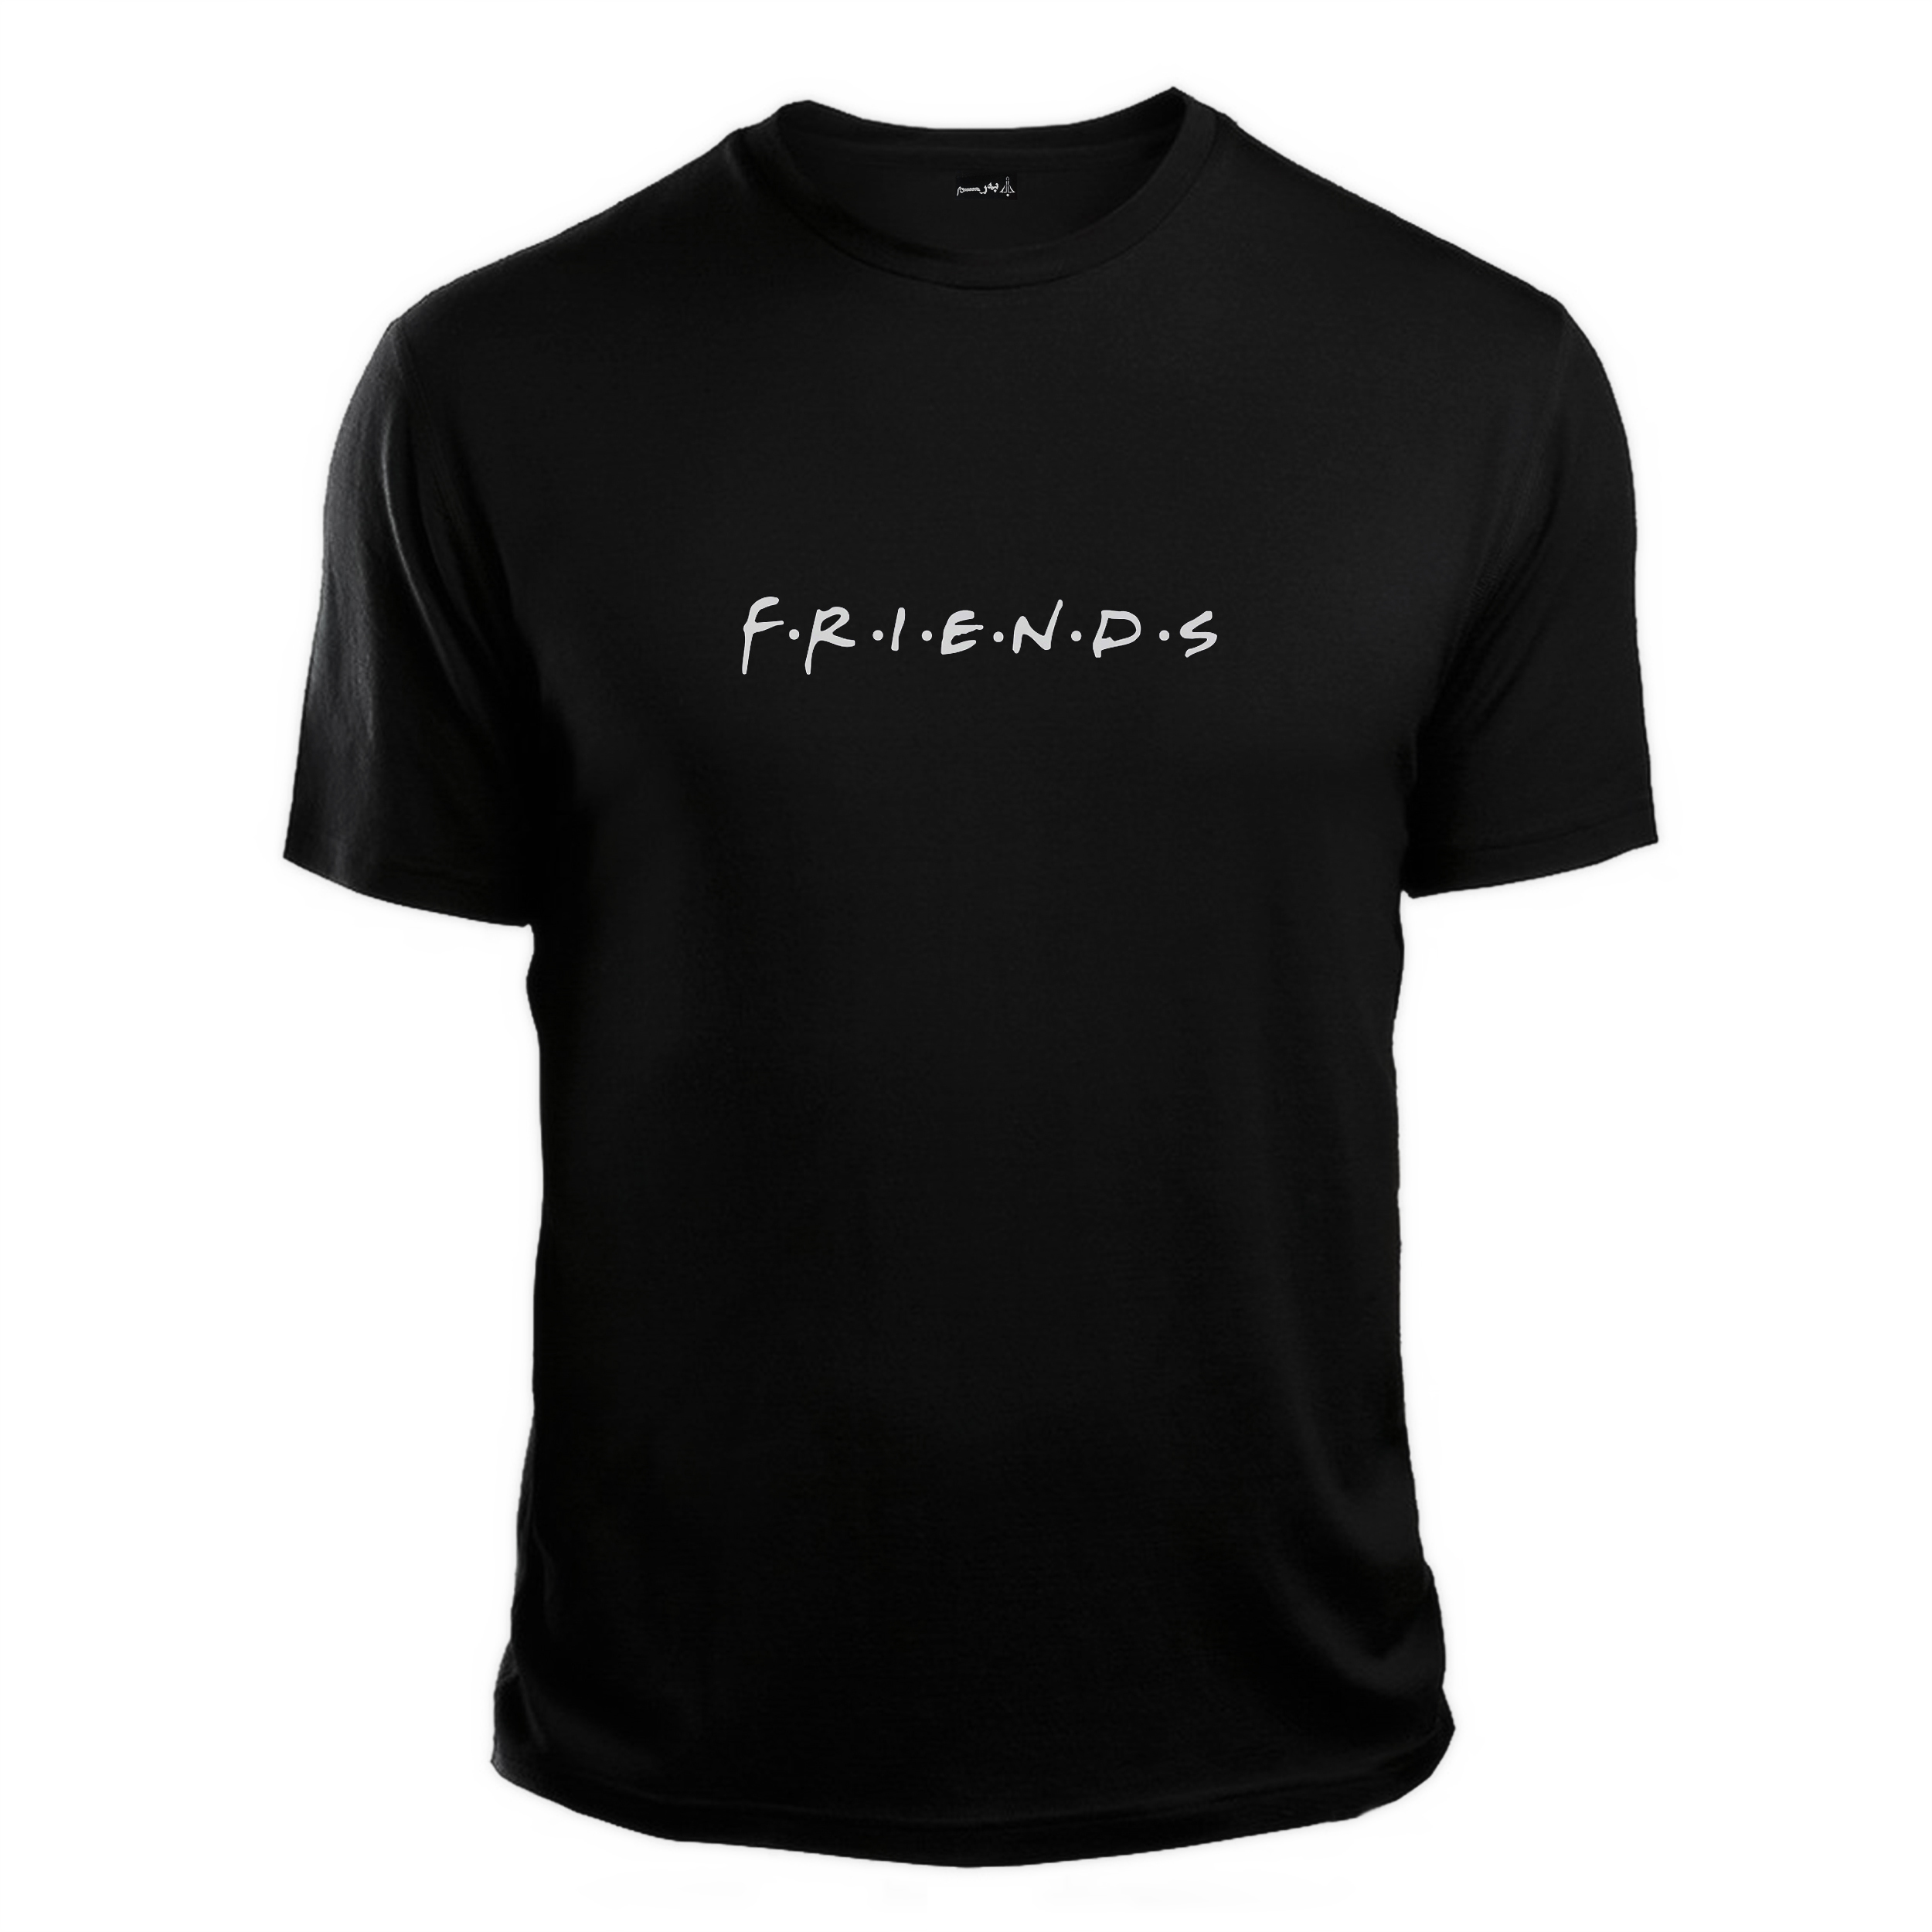 تی شرت آستین کوتاه زنانه به رسم مدل دوستان کد 0004